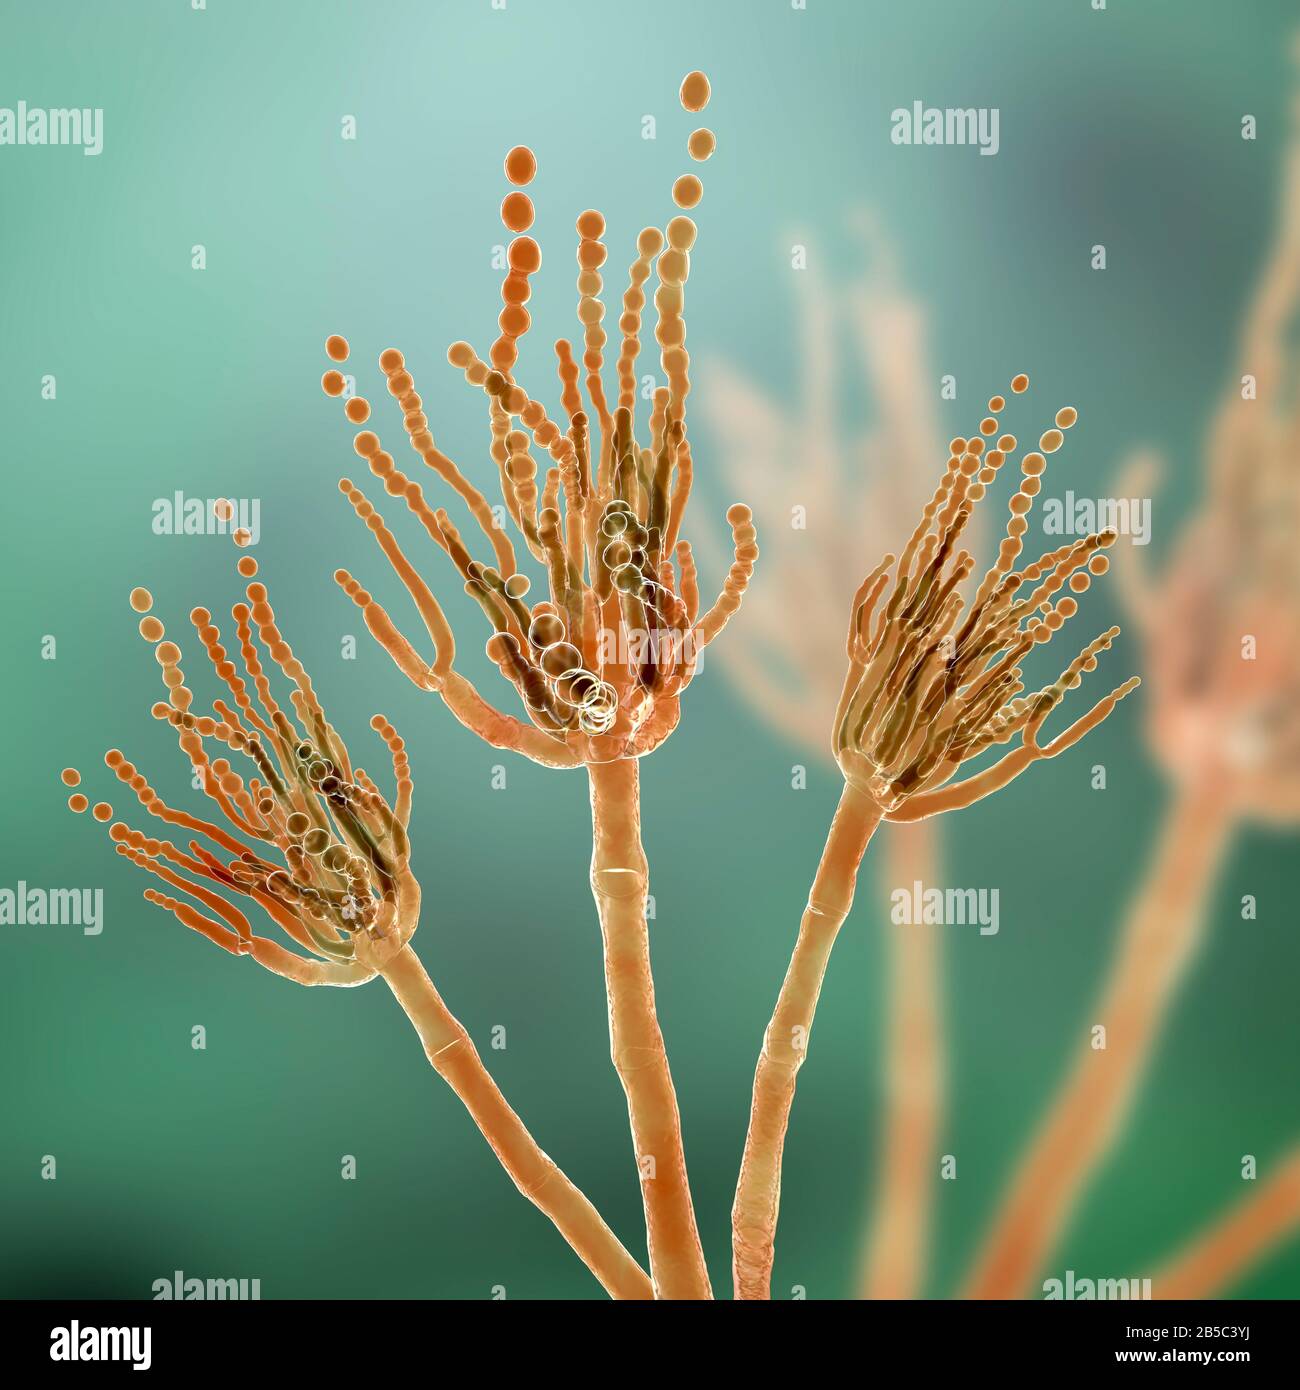 Penicillium fungus, illustration Stock Photo